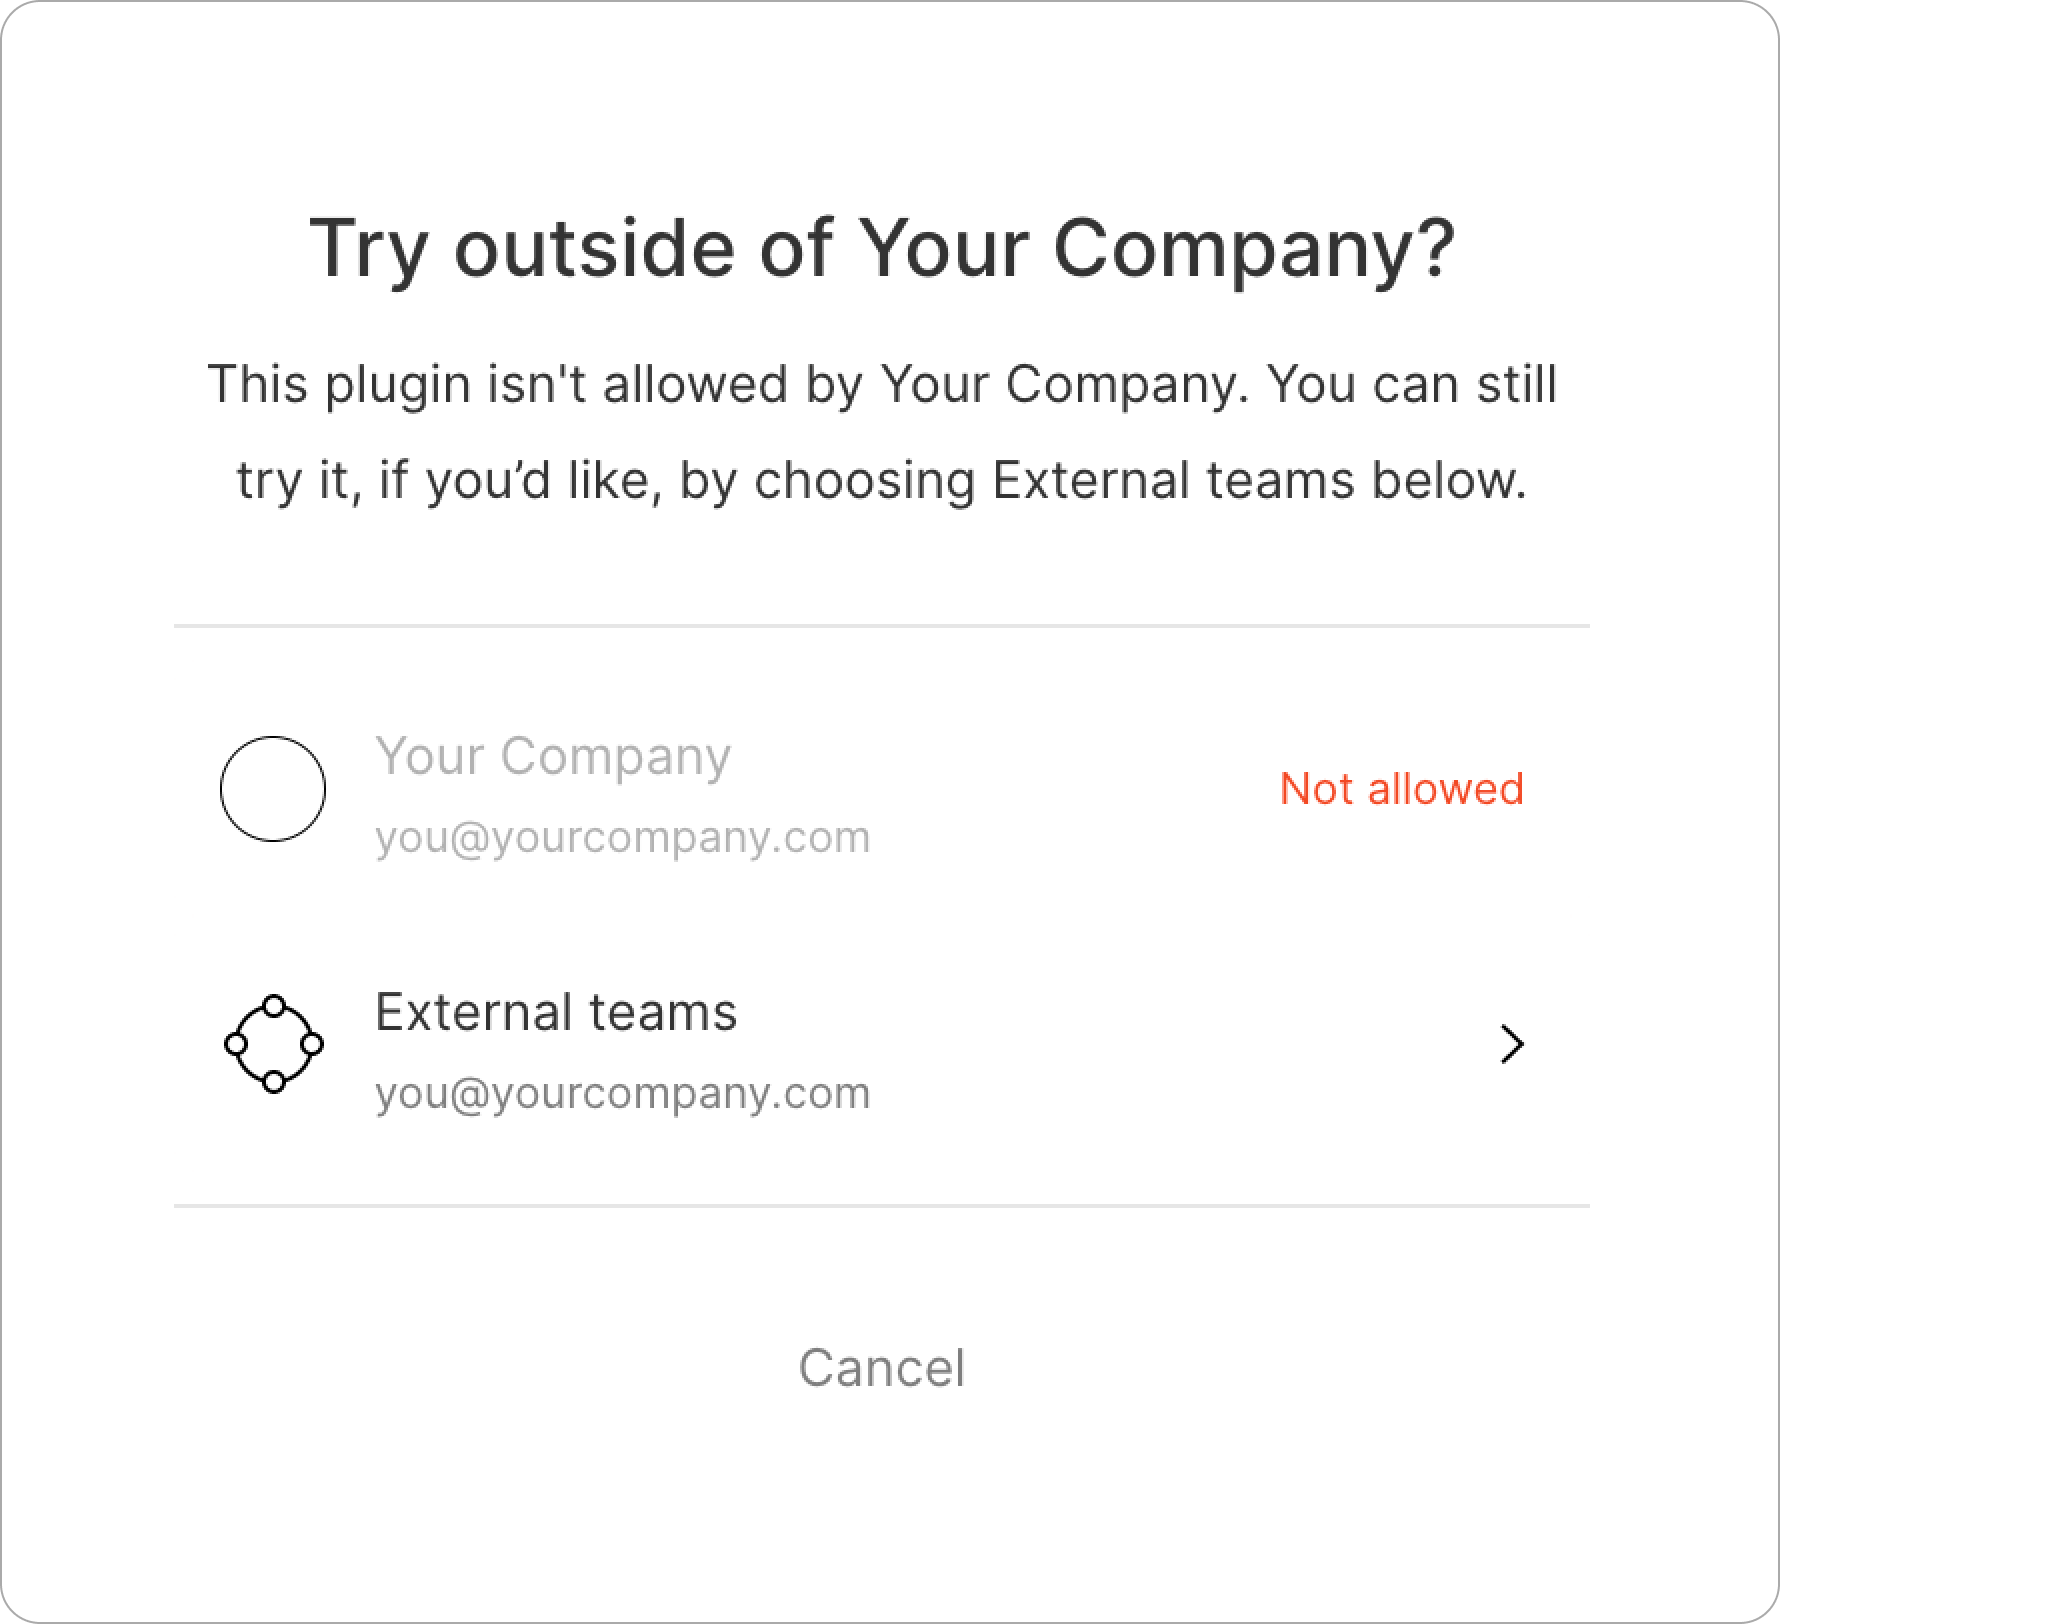 对话框中的“External teams”选项